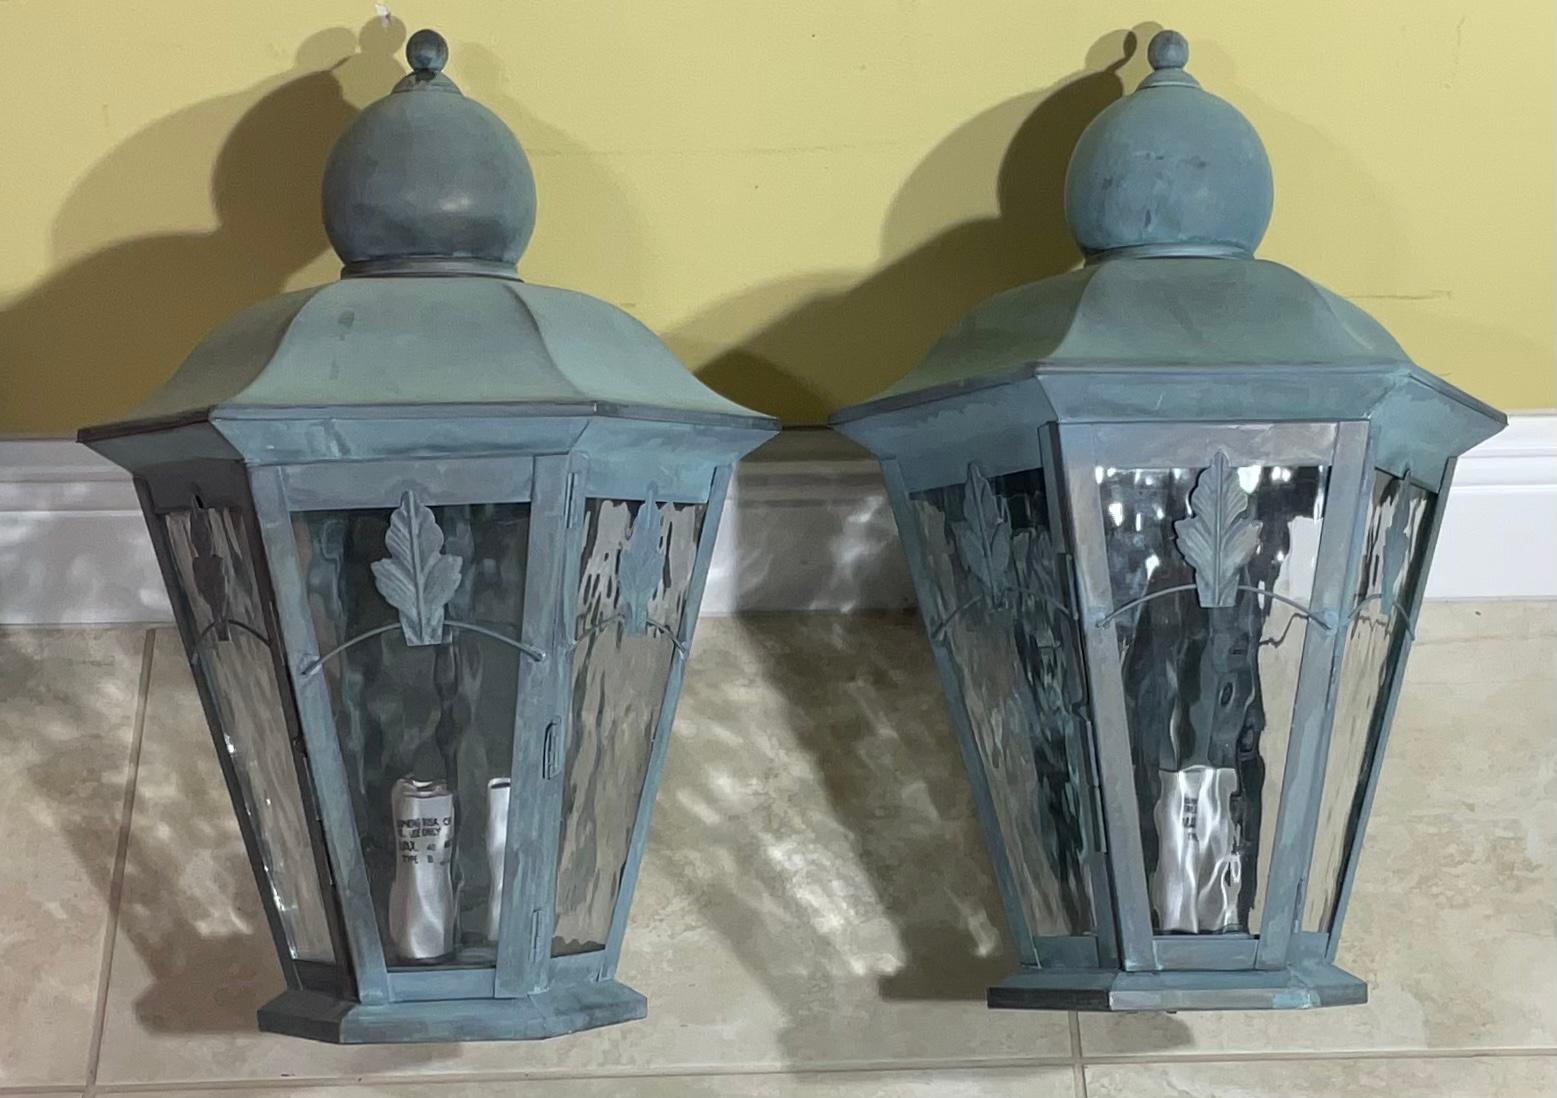 Elegante paire de lanternes murales en laiton, fabriquées à la main, avec trois ampoules de 40 watts chacune. 
 Convient aux emplacements humides, électrifié et prêt à l'emploi.
Magnifique paire de lanternes décoratives pour l'intérieur ou